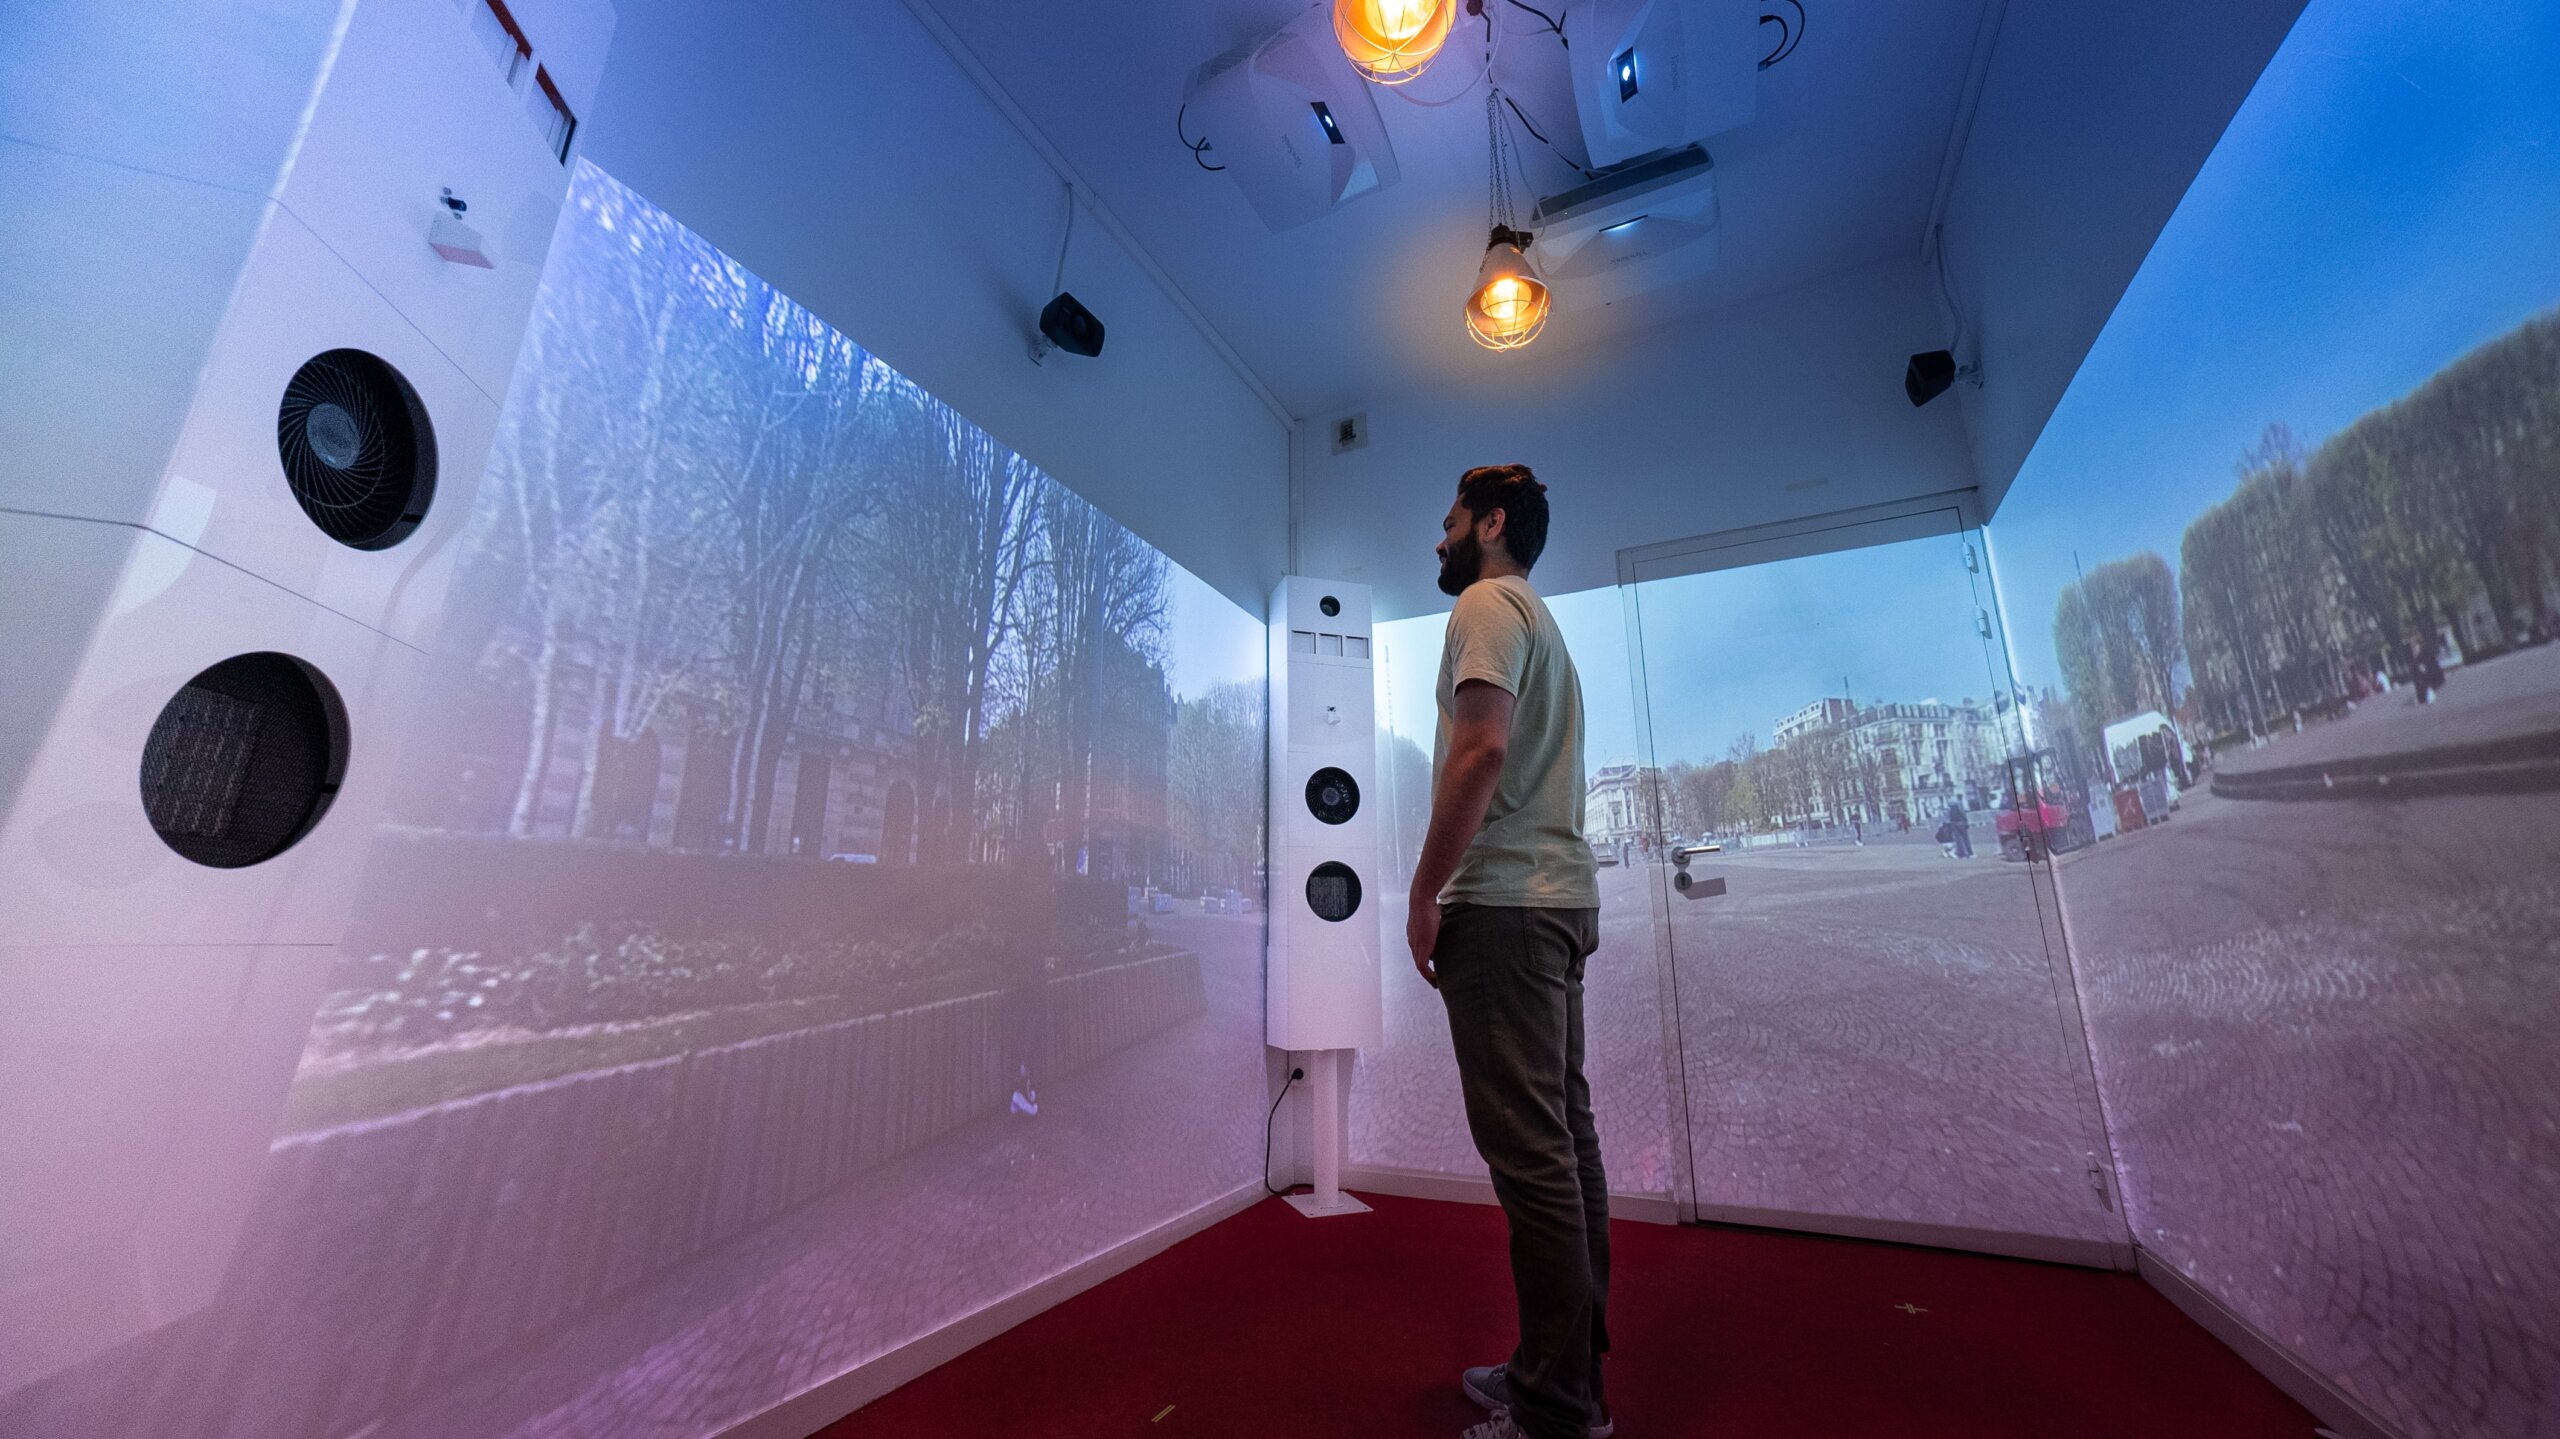 chercheur testant une expérience sensorielle dans une salle immersive